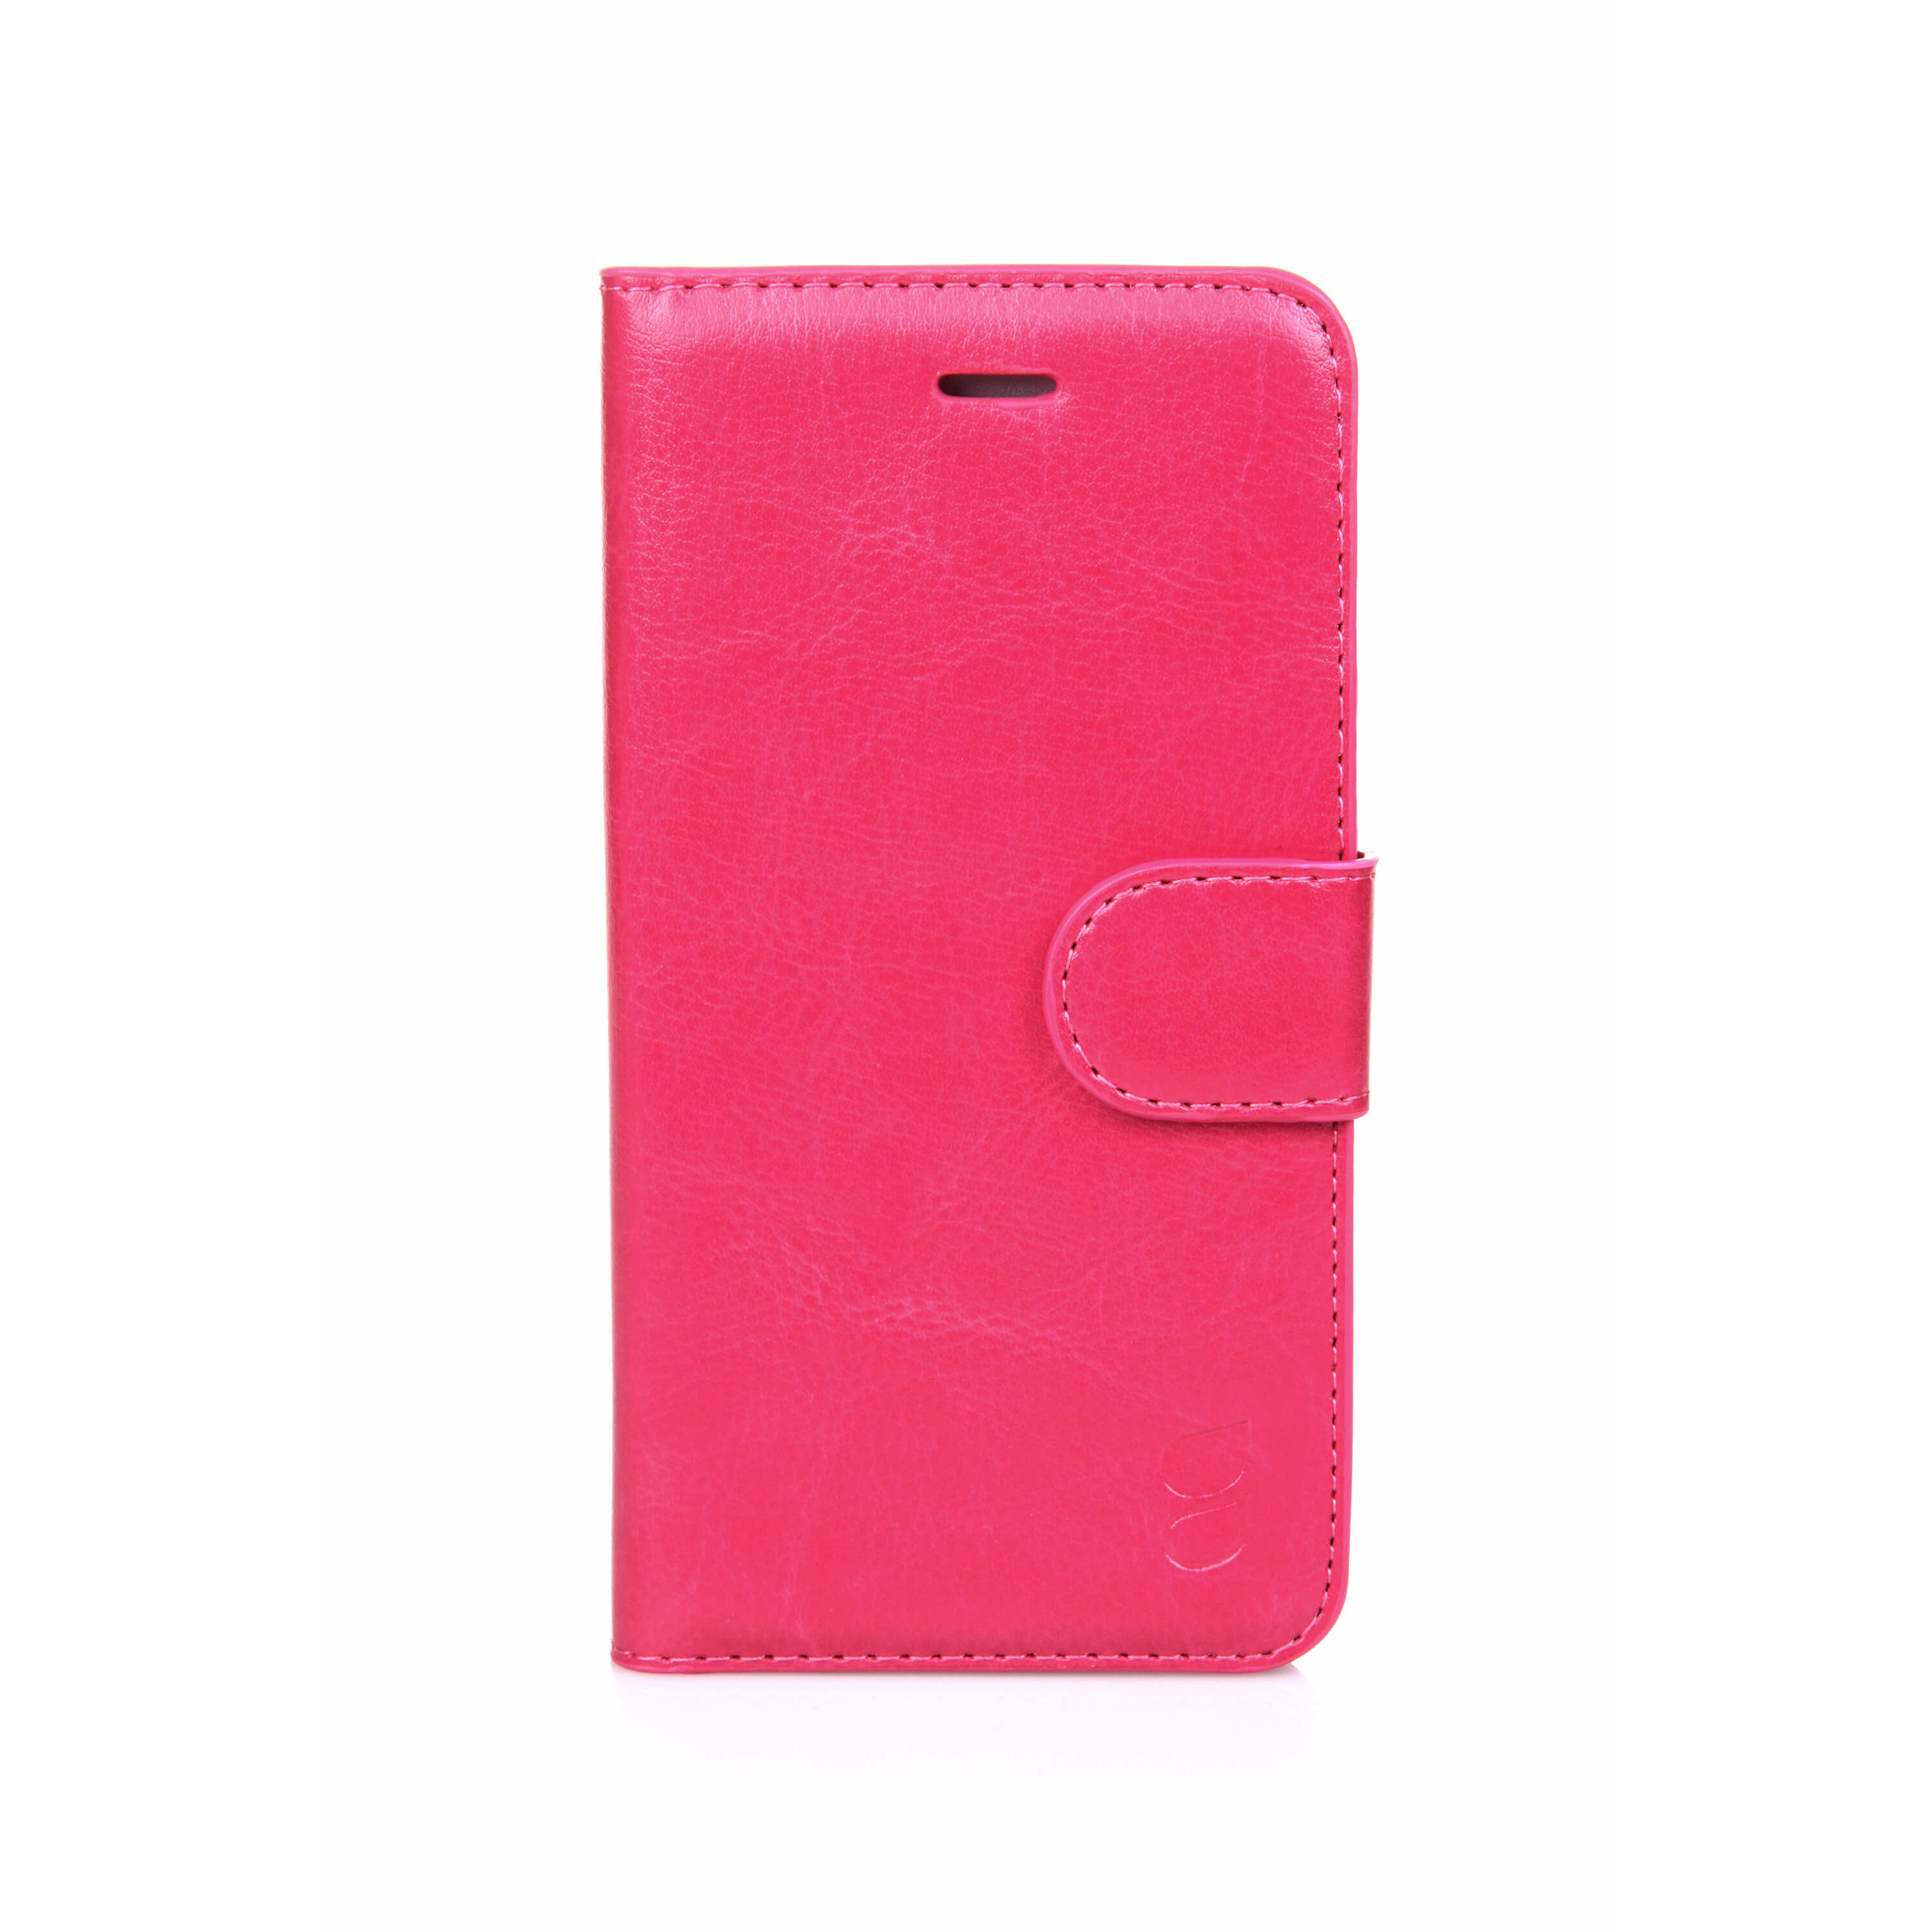 Wallet Case Exclusive Pink - iPhone 6/6S 